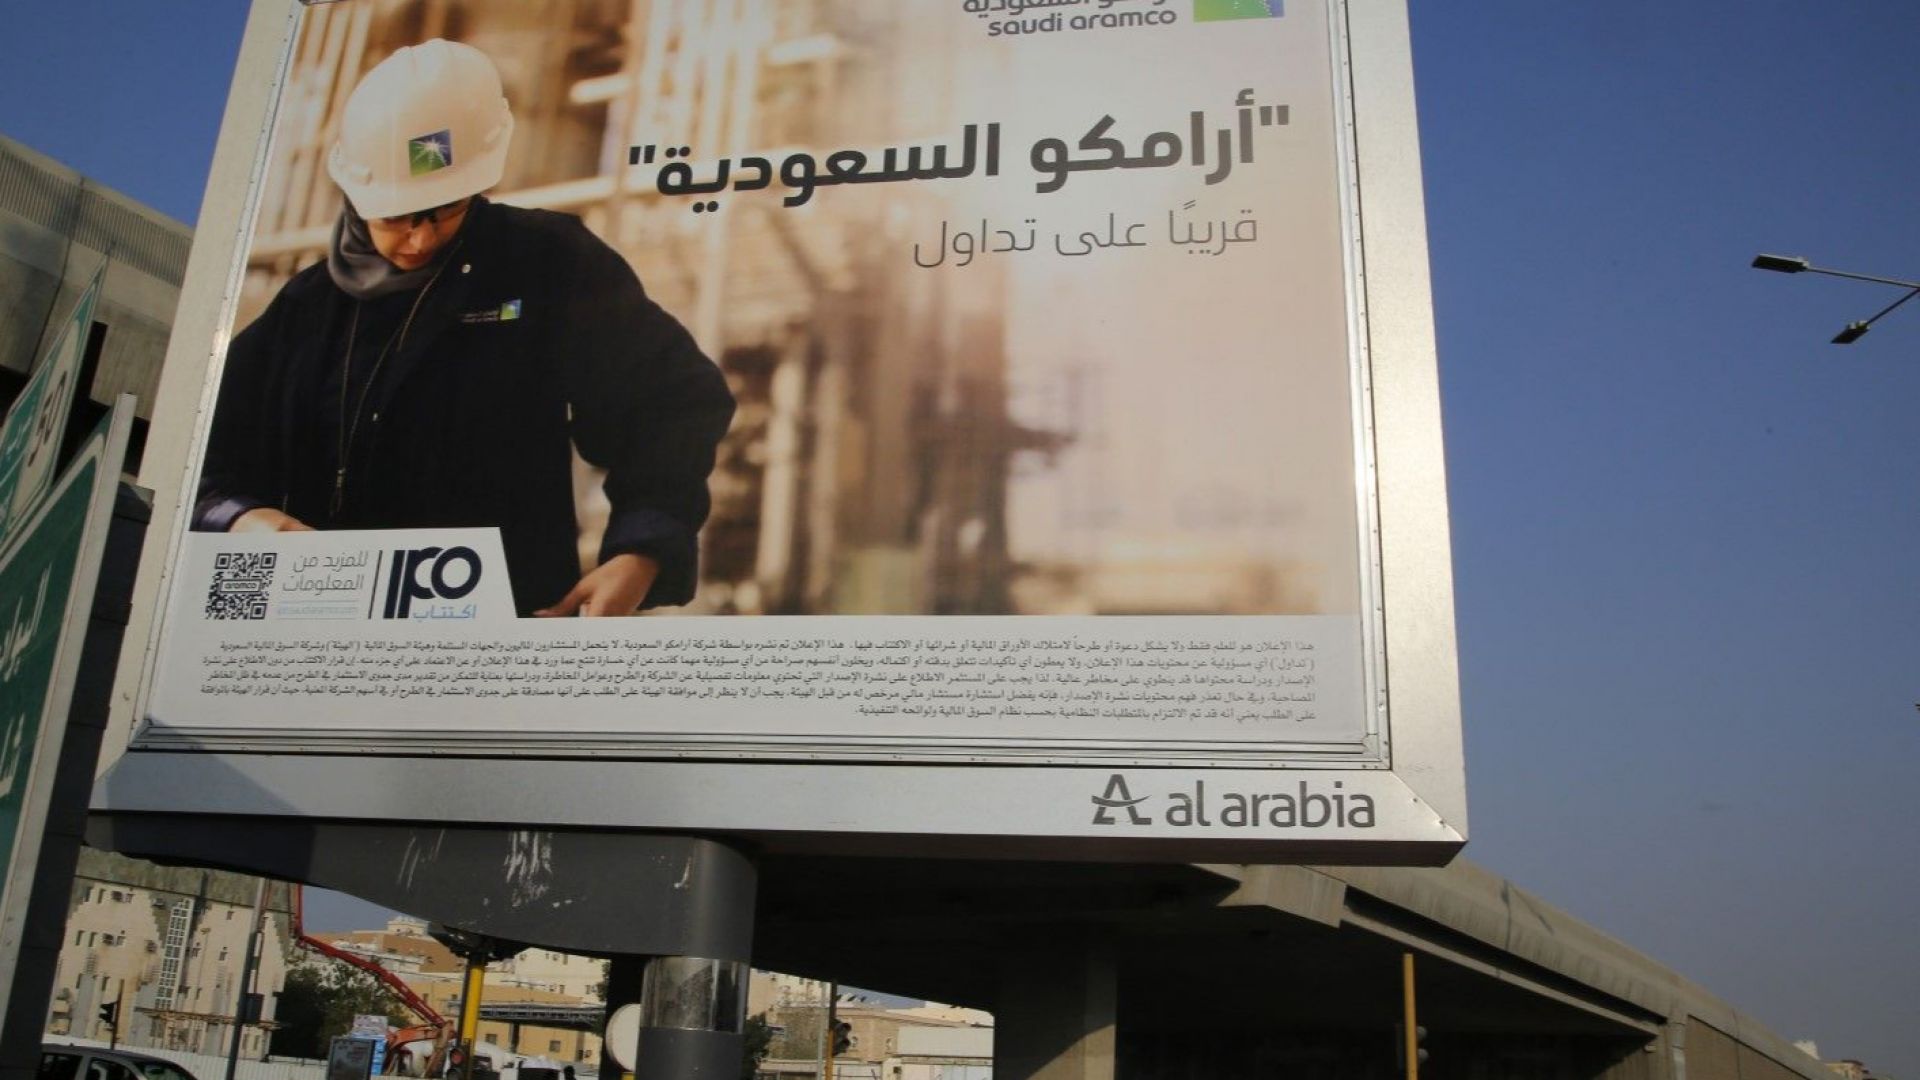 Сауди Арамко изважда на борсата в Рияд 1,5% от акциите си на цени $8-8,53 за акция